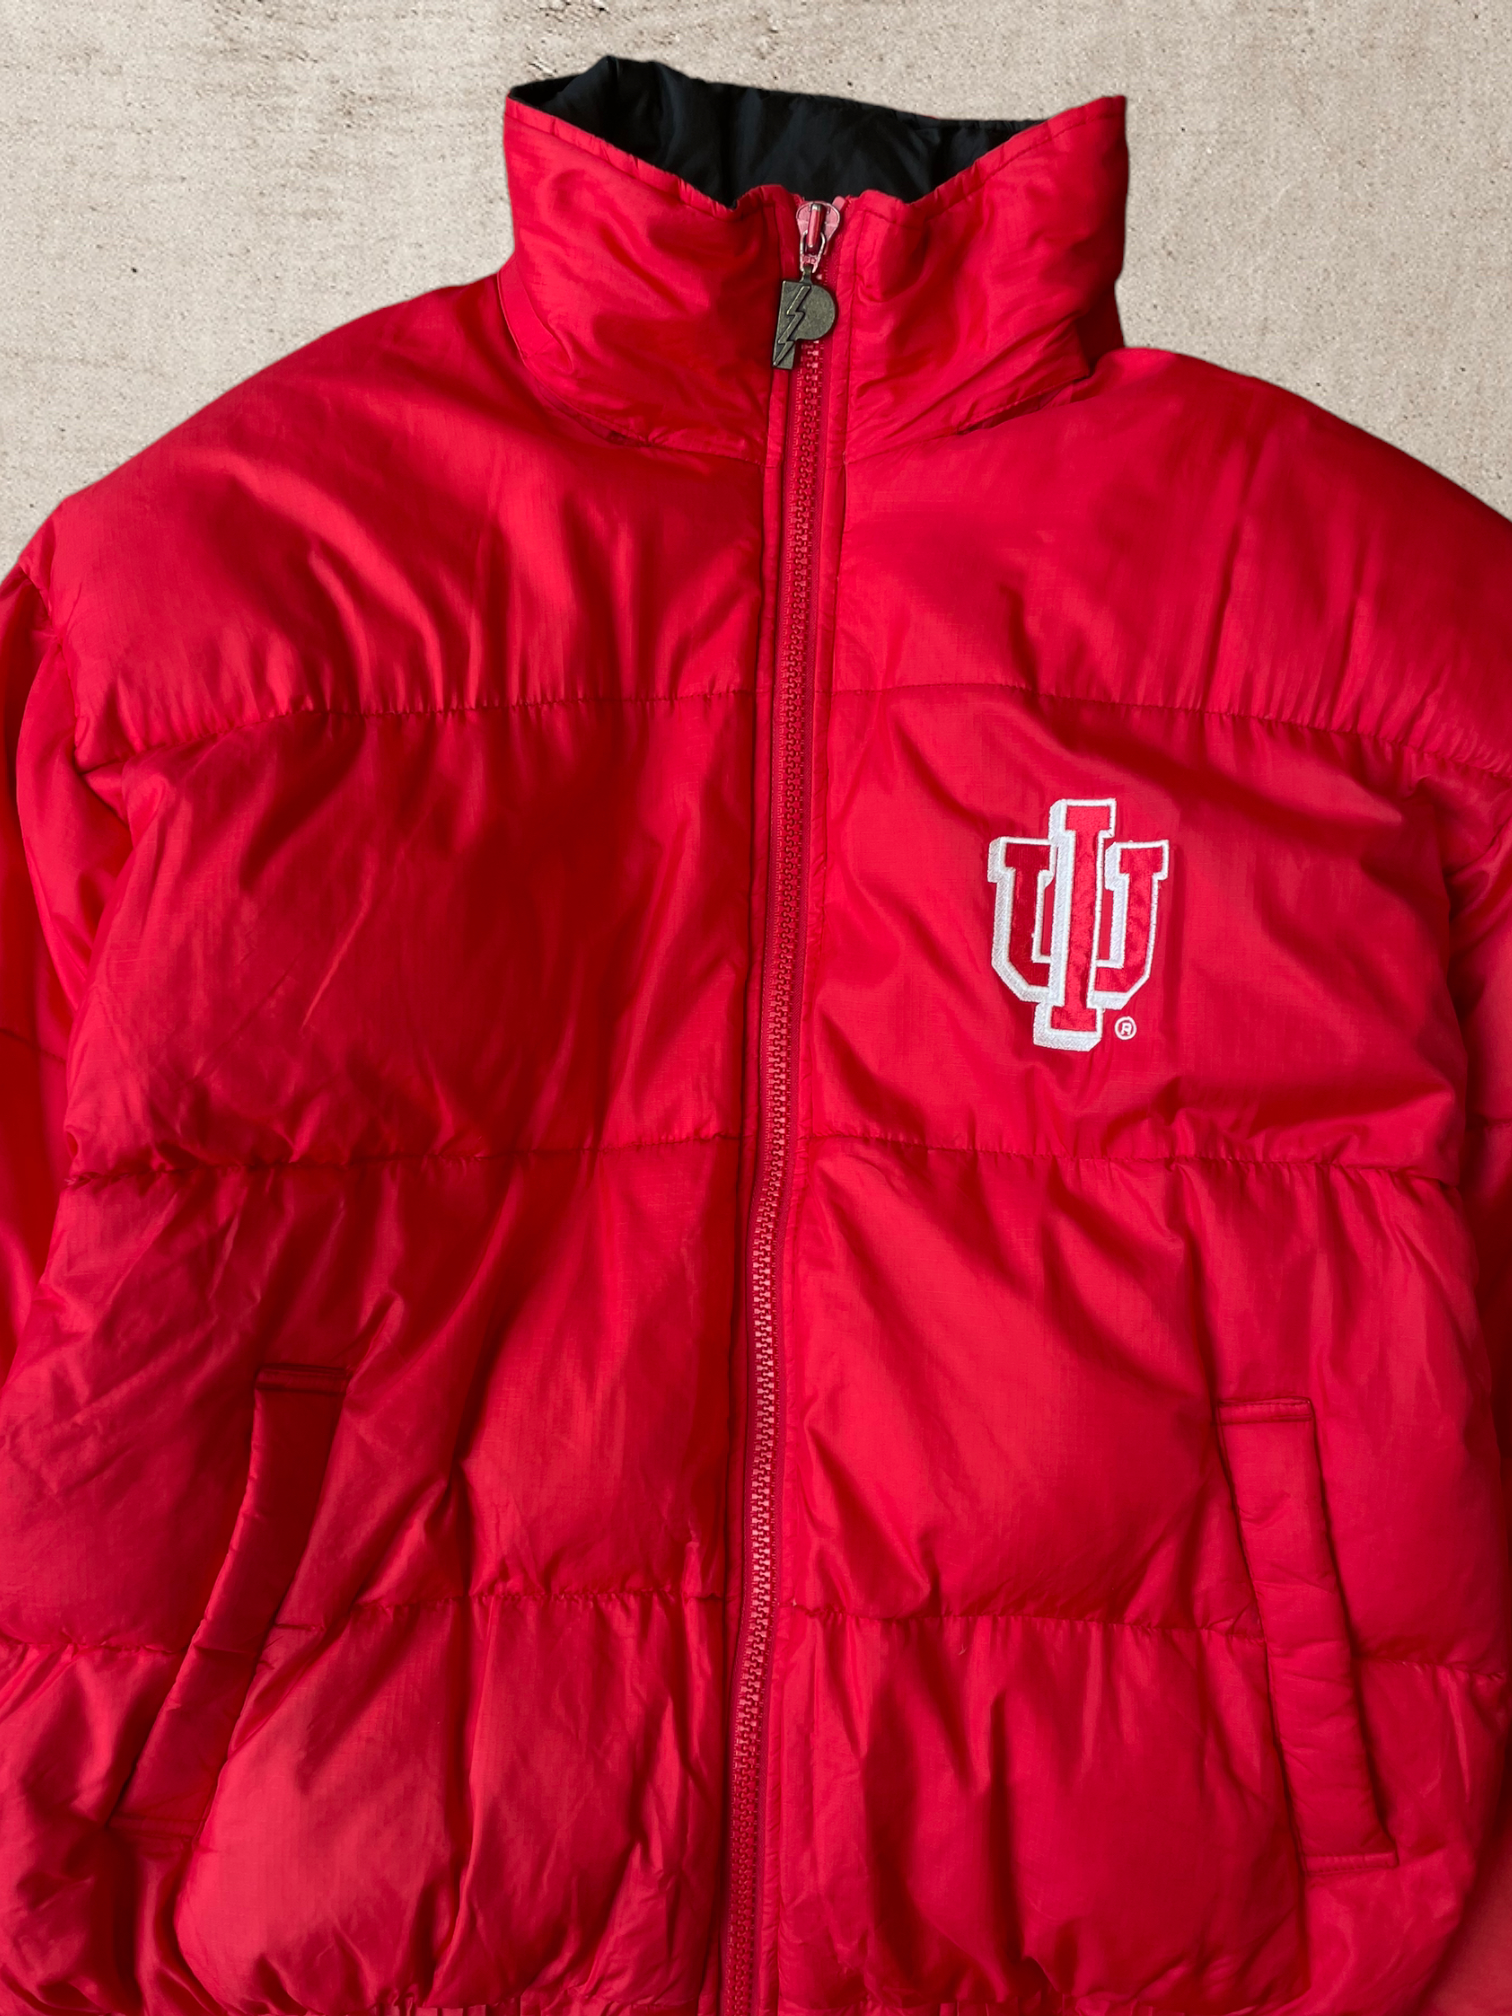 Vintage University of Indiana Puffer Jacket - Large